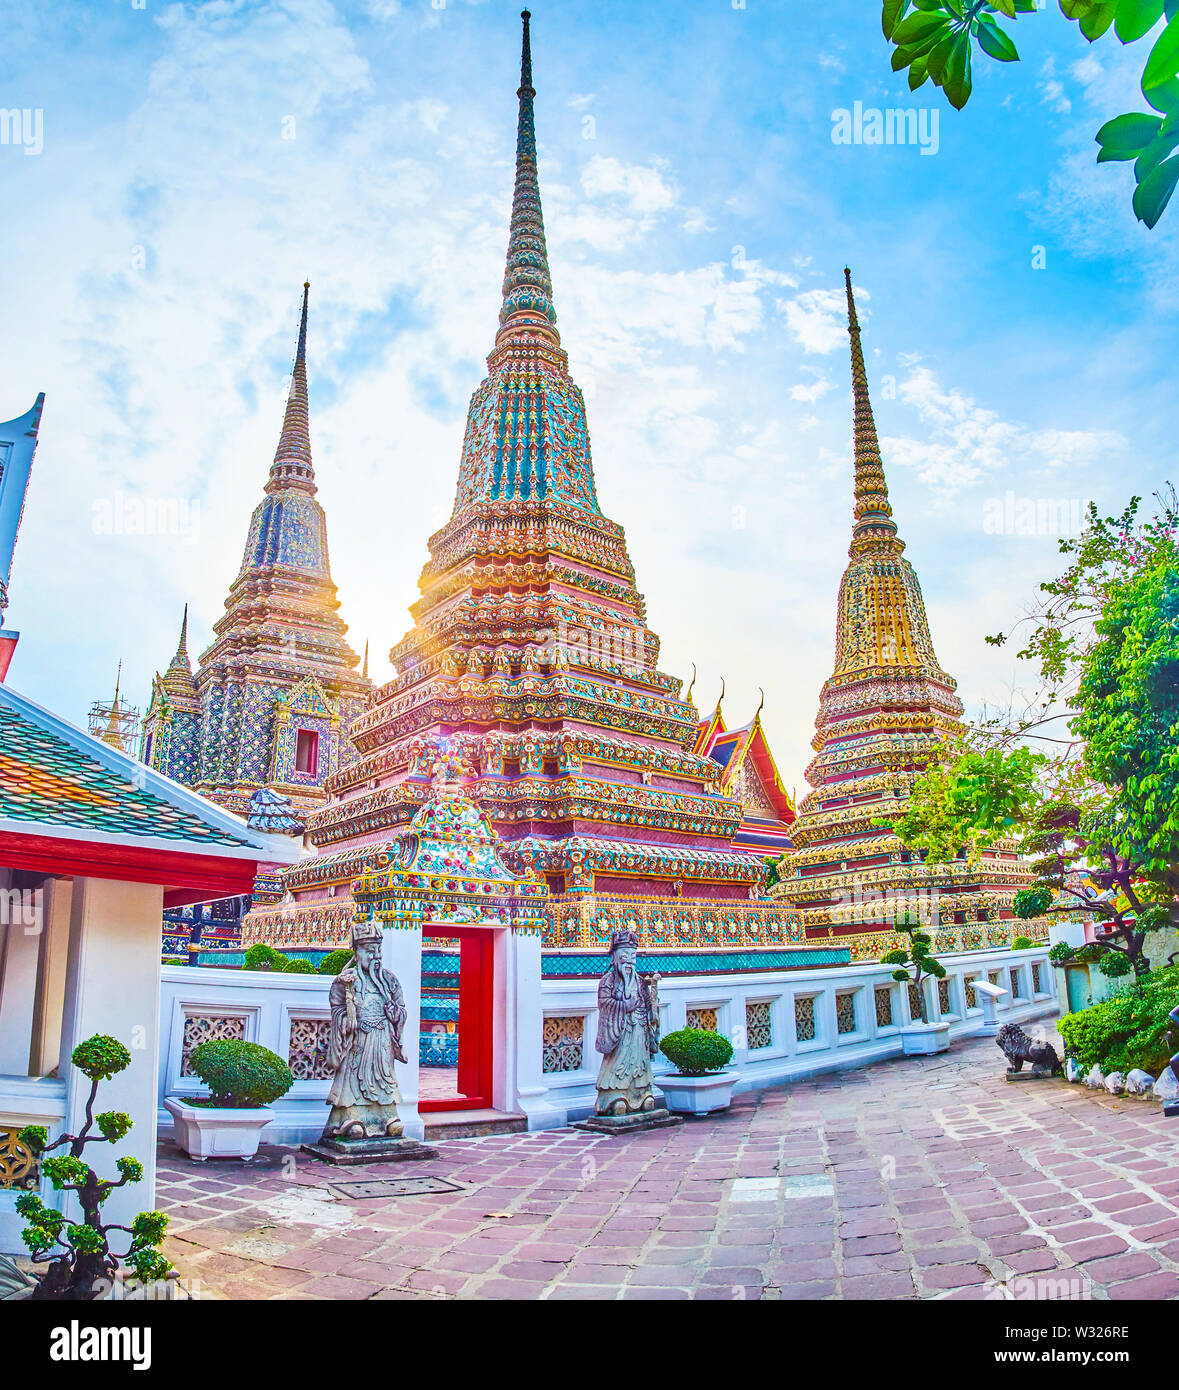 Die Aussicht auf hohe Pagoden von Phra Maha Chedi Schrein, einer der berühmtesten Teil der Wat Pho, Bangkok, Thailand Stockfoto